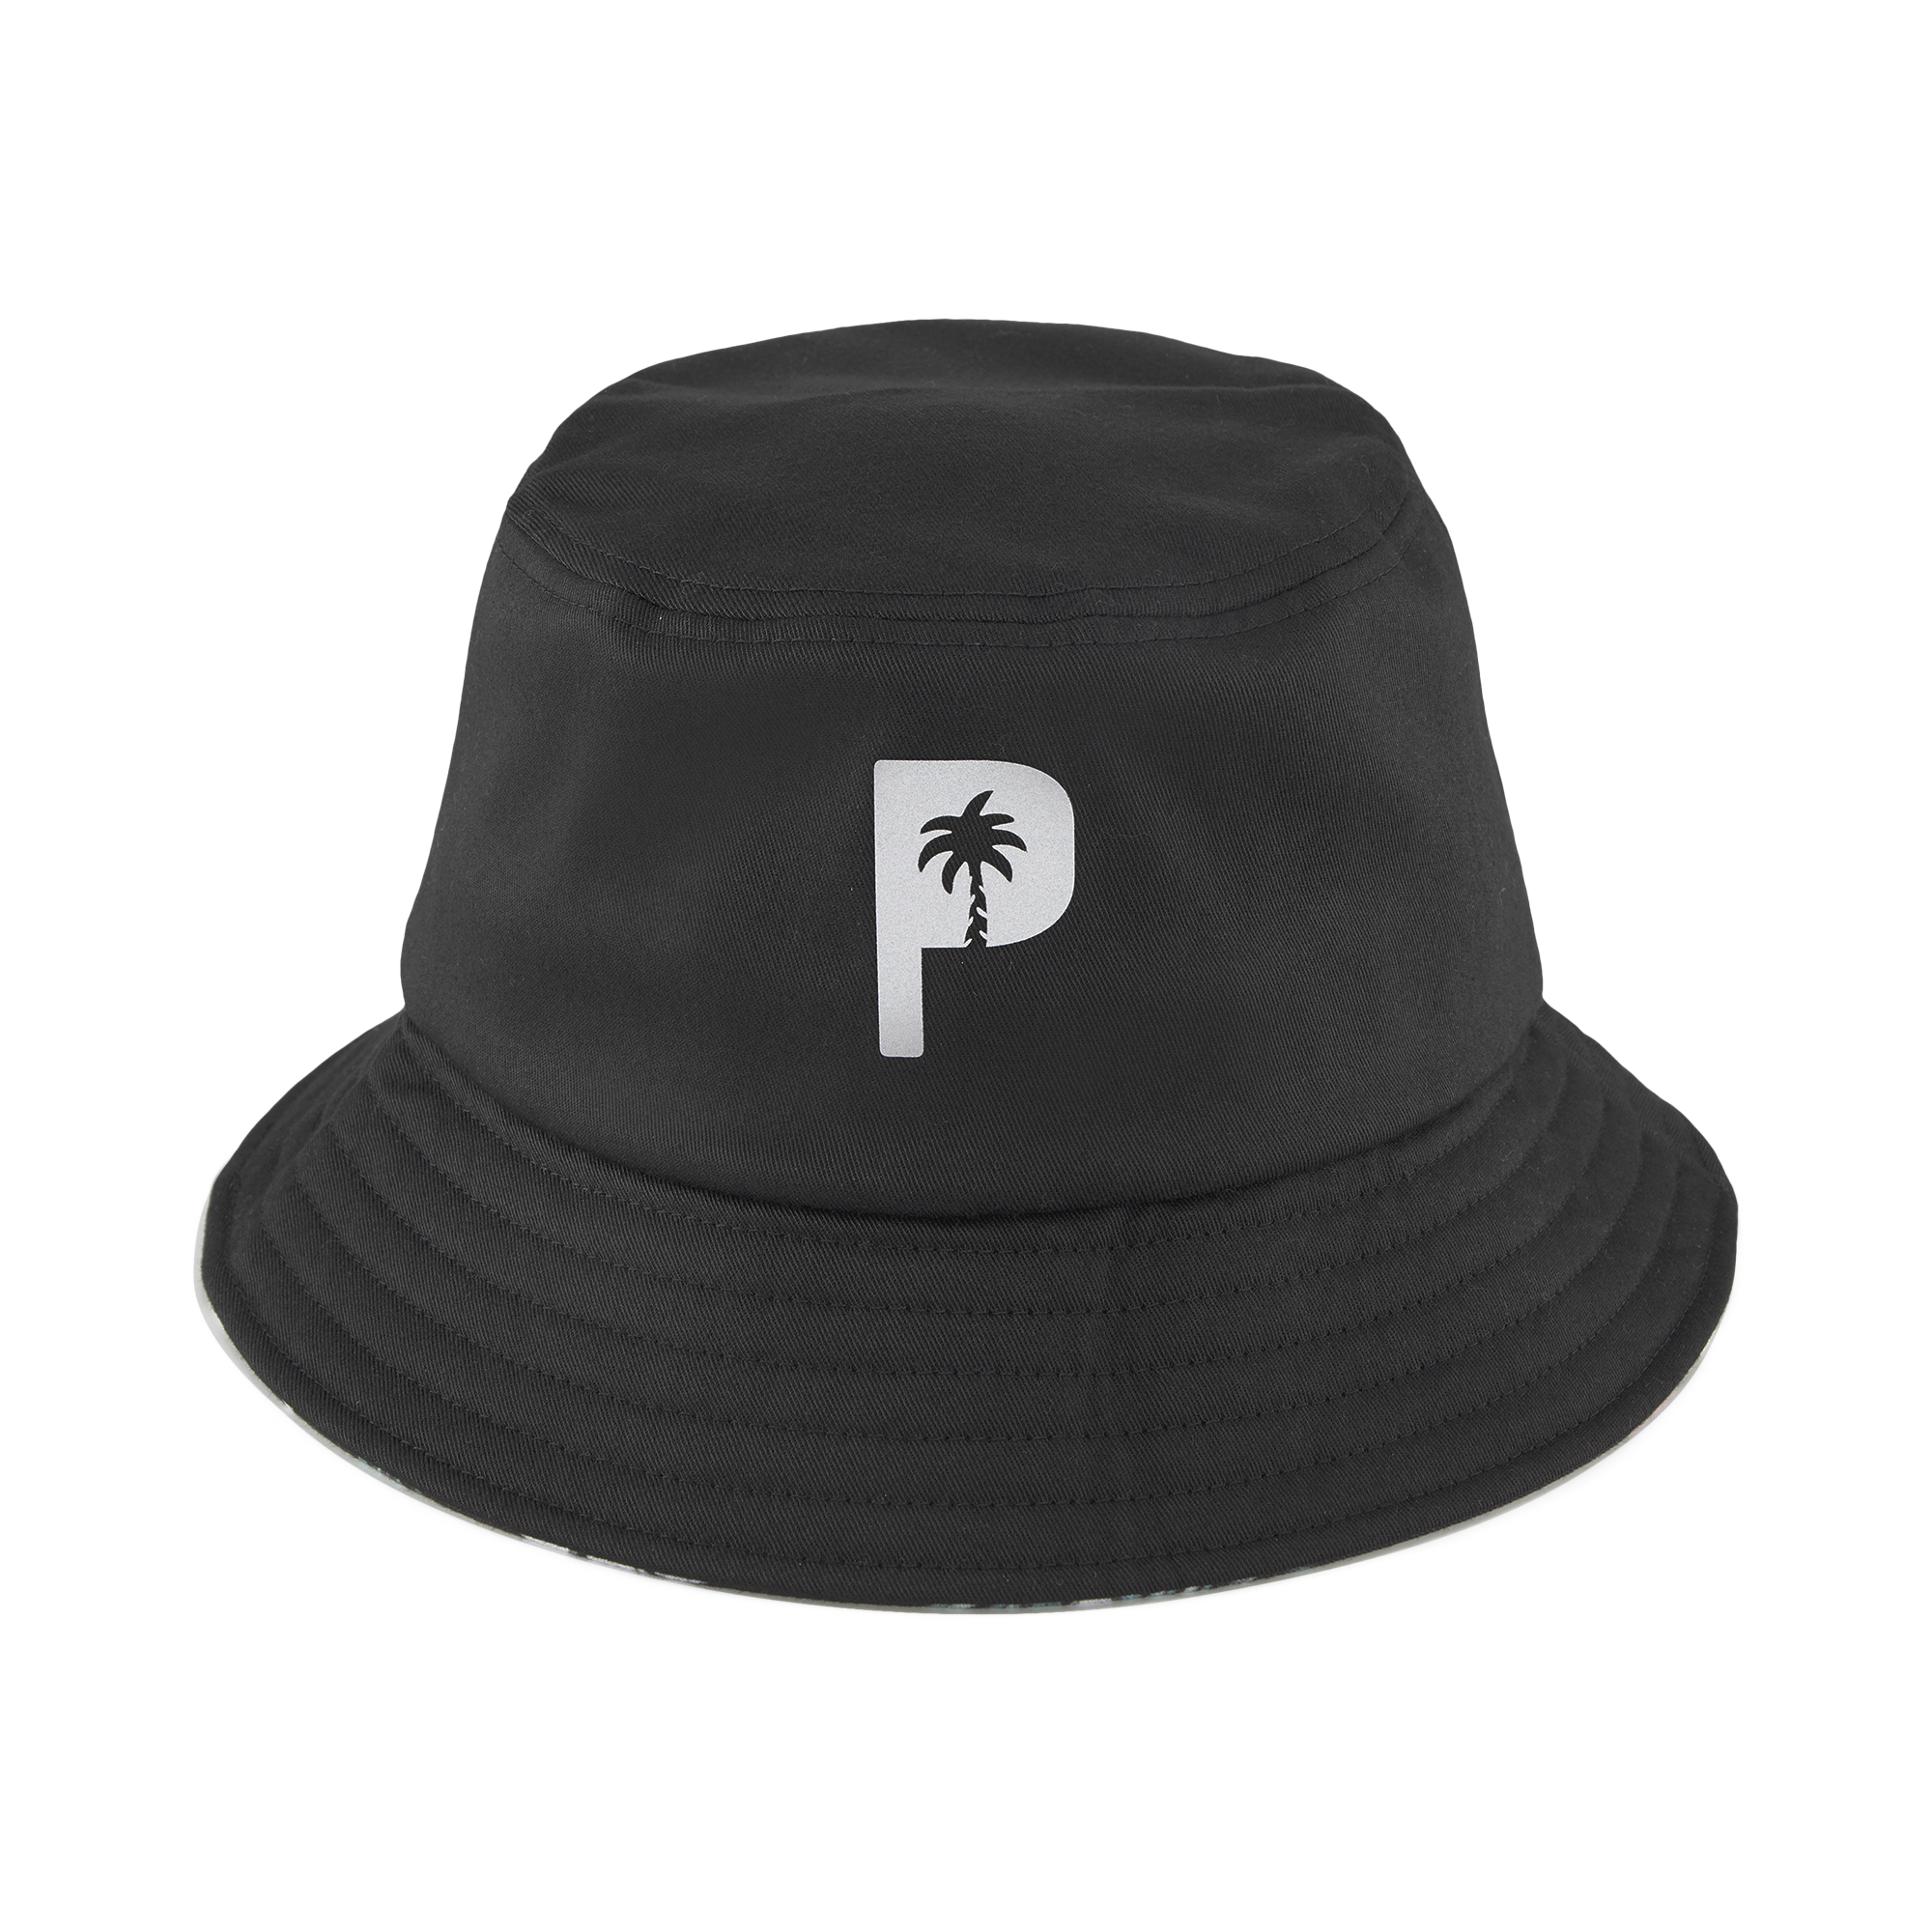 PUMA X PTC BUCKET HAT - PUMA BLACK